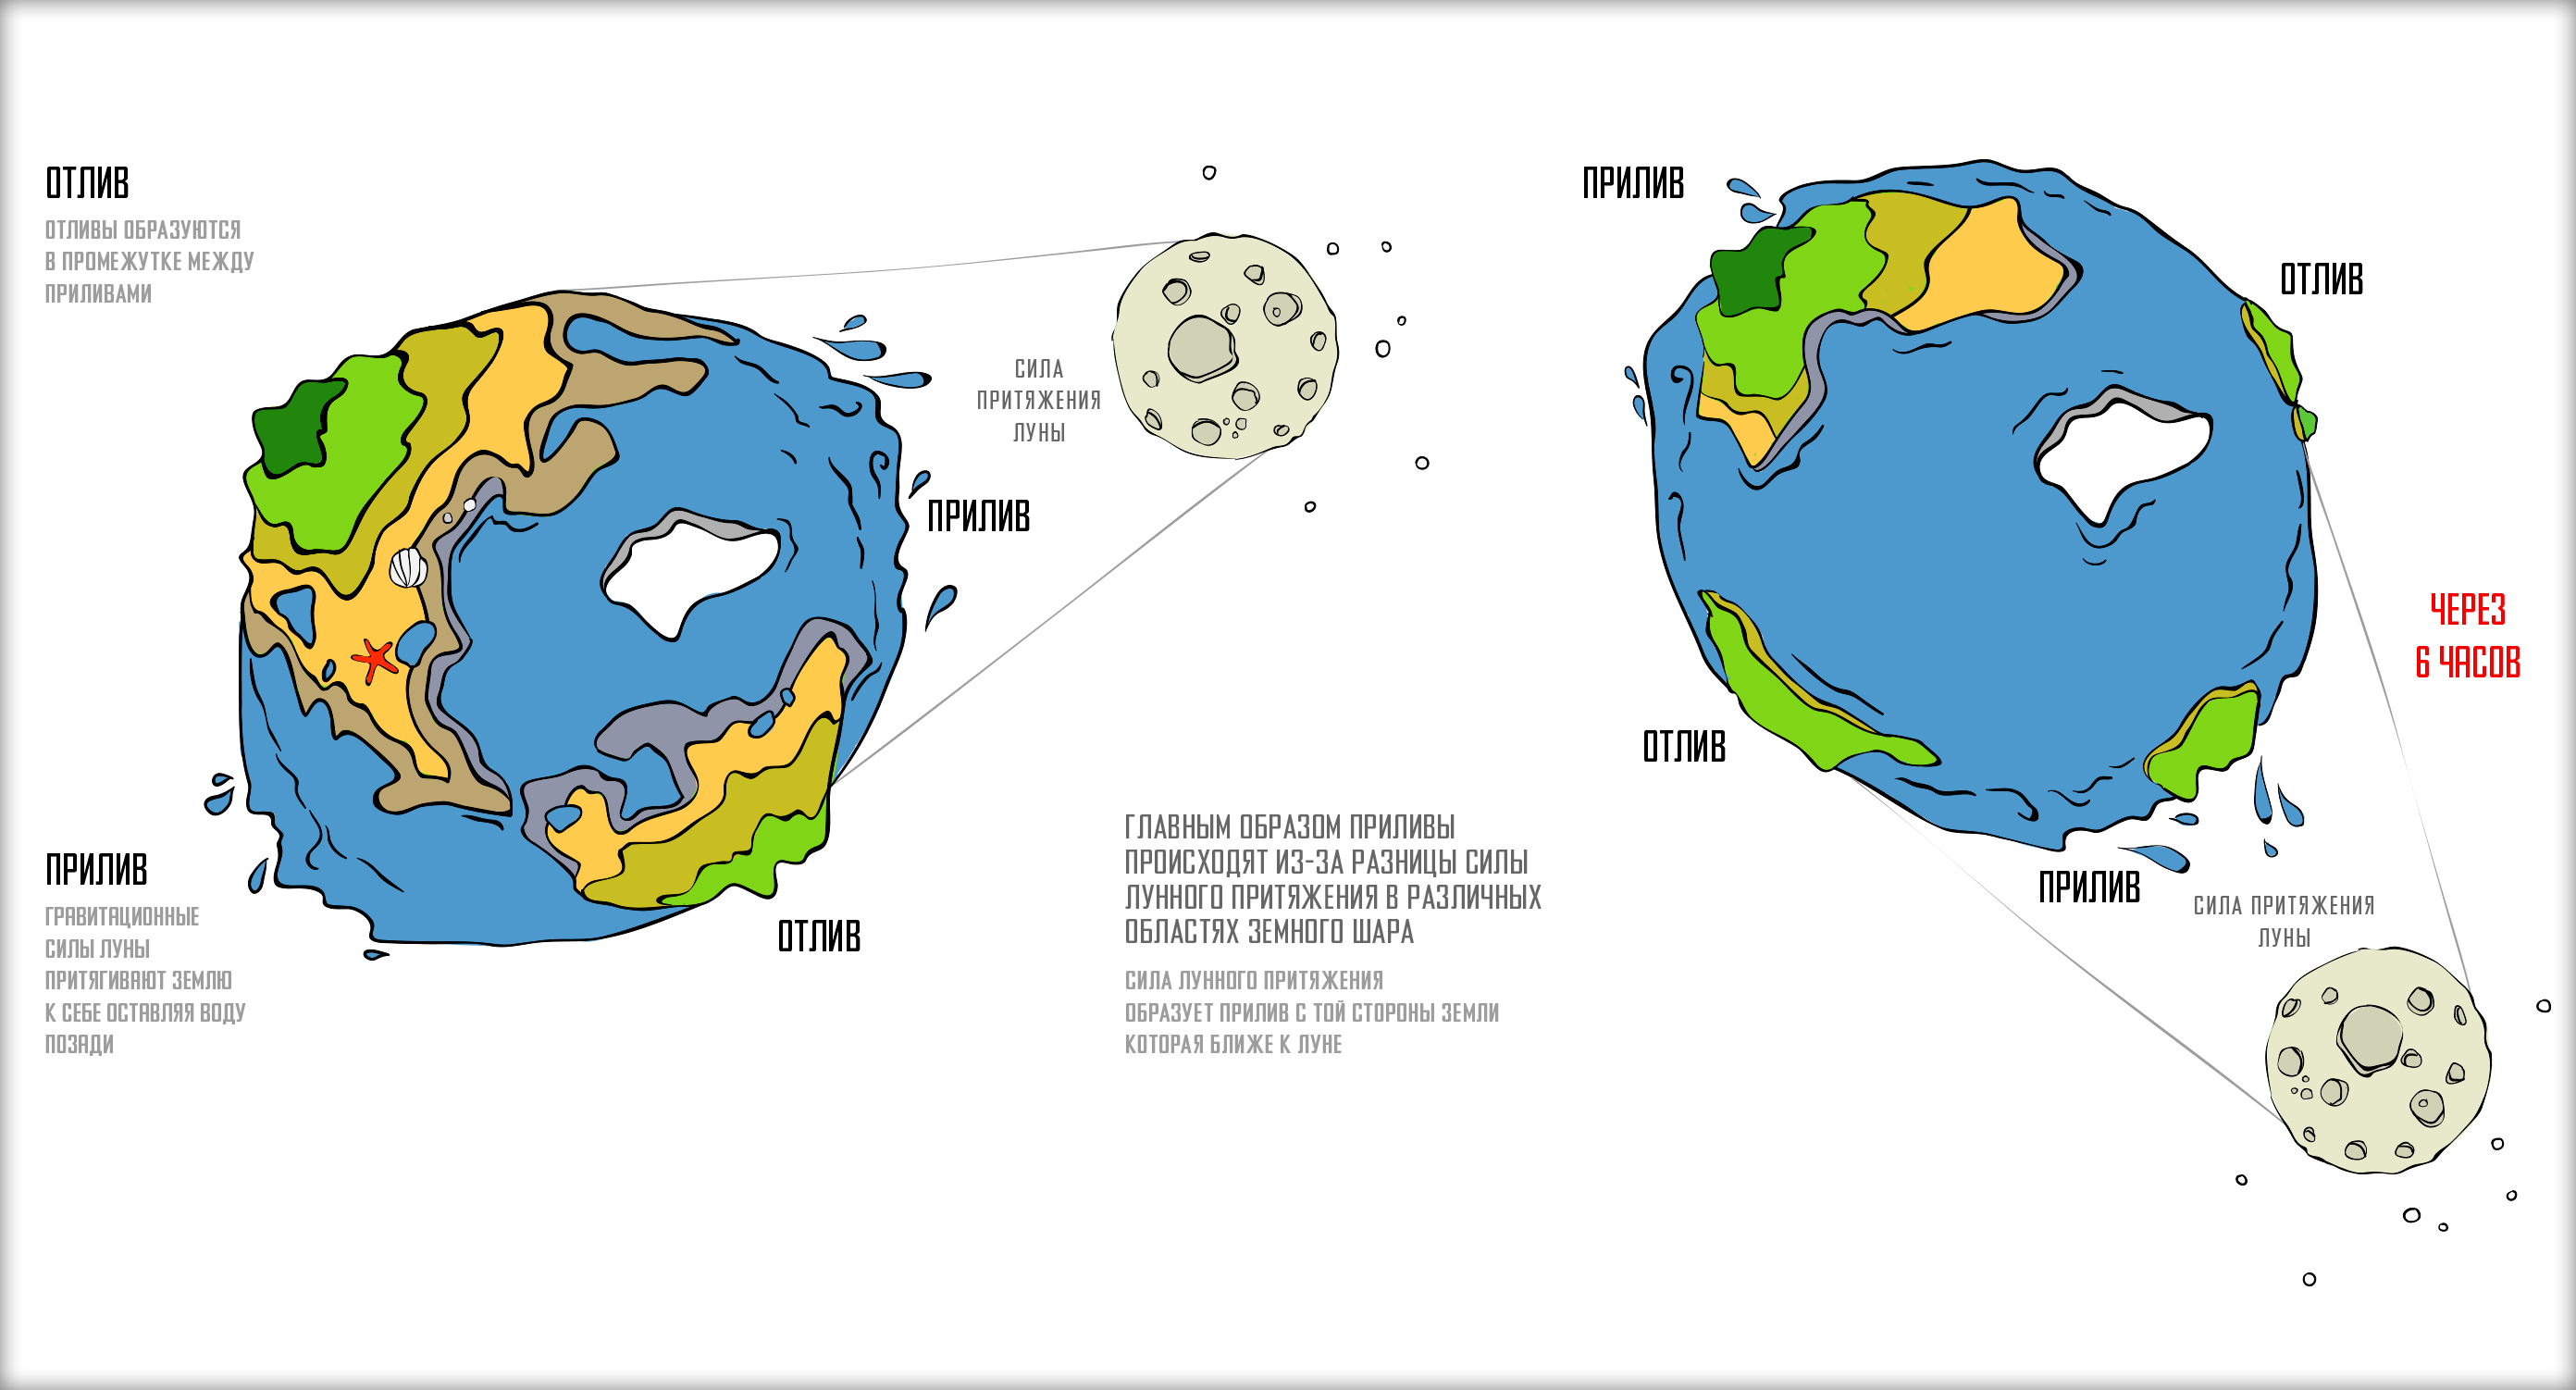 Приливы и отливы в океане вызывают. Земля Луна отлив прилив схема. Приливы и отливы Луна схема. Схема образования приливов и отливов. Приливы и отливы влияние Луны схема.